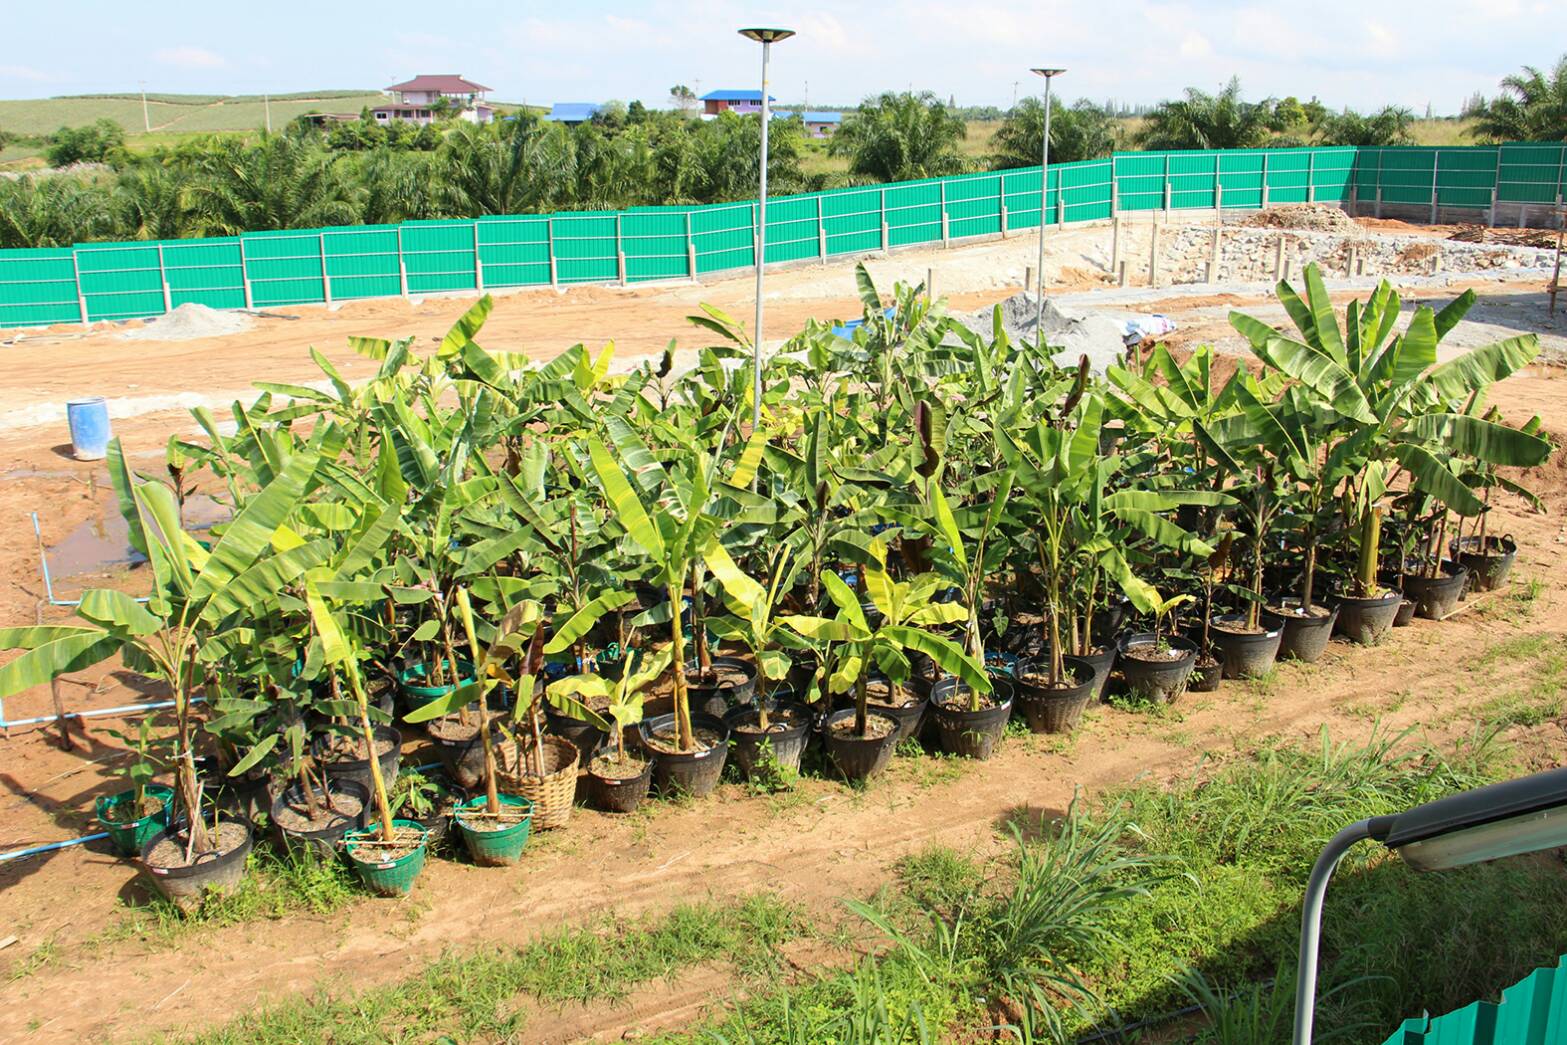 ฮือฮา! เปิดดง กล้วยด่างแดงอินโด มูลค่า 100 ล้าน ที่ราชบุรี